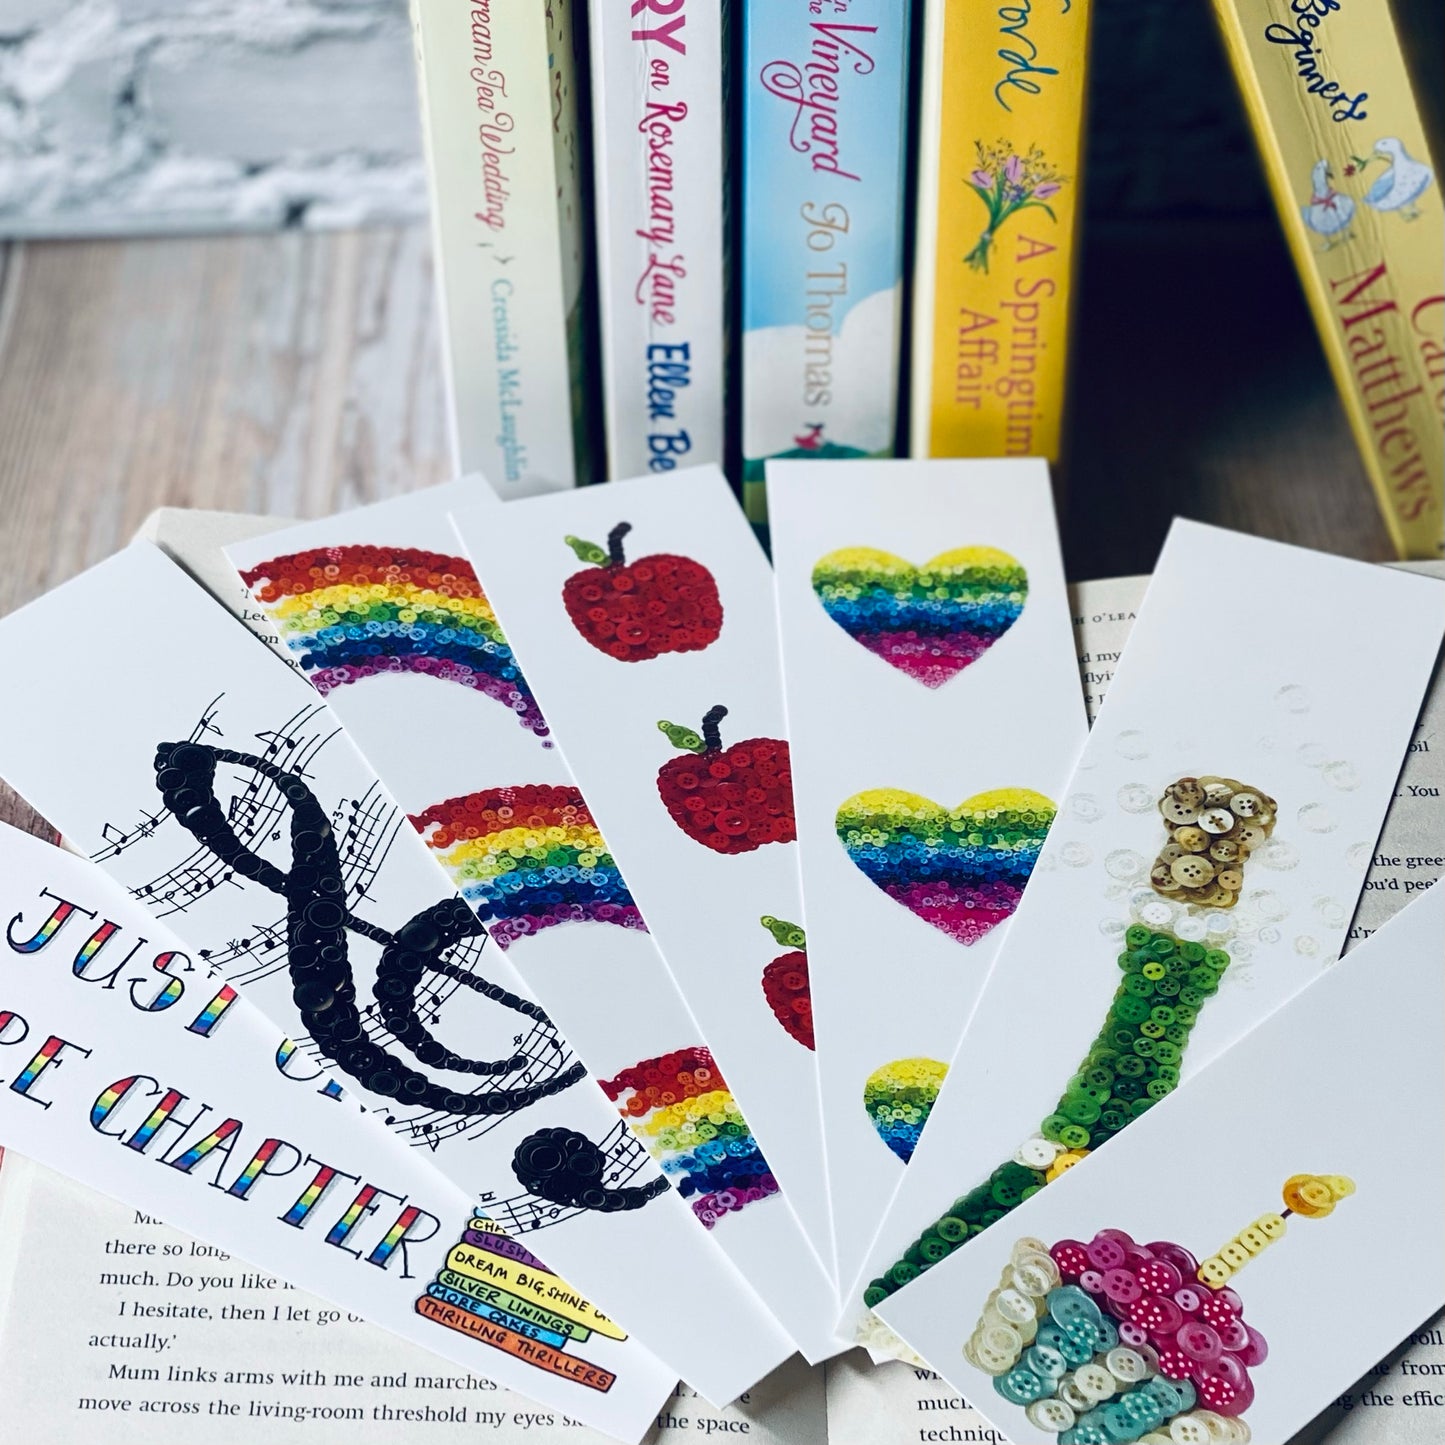 rainbow-gift-ideas